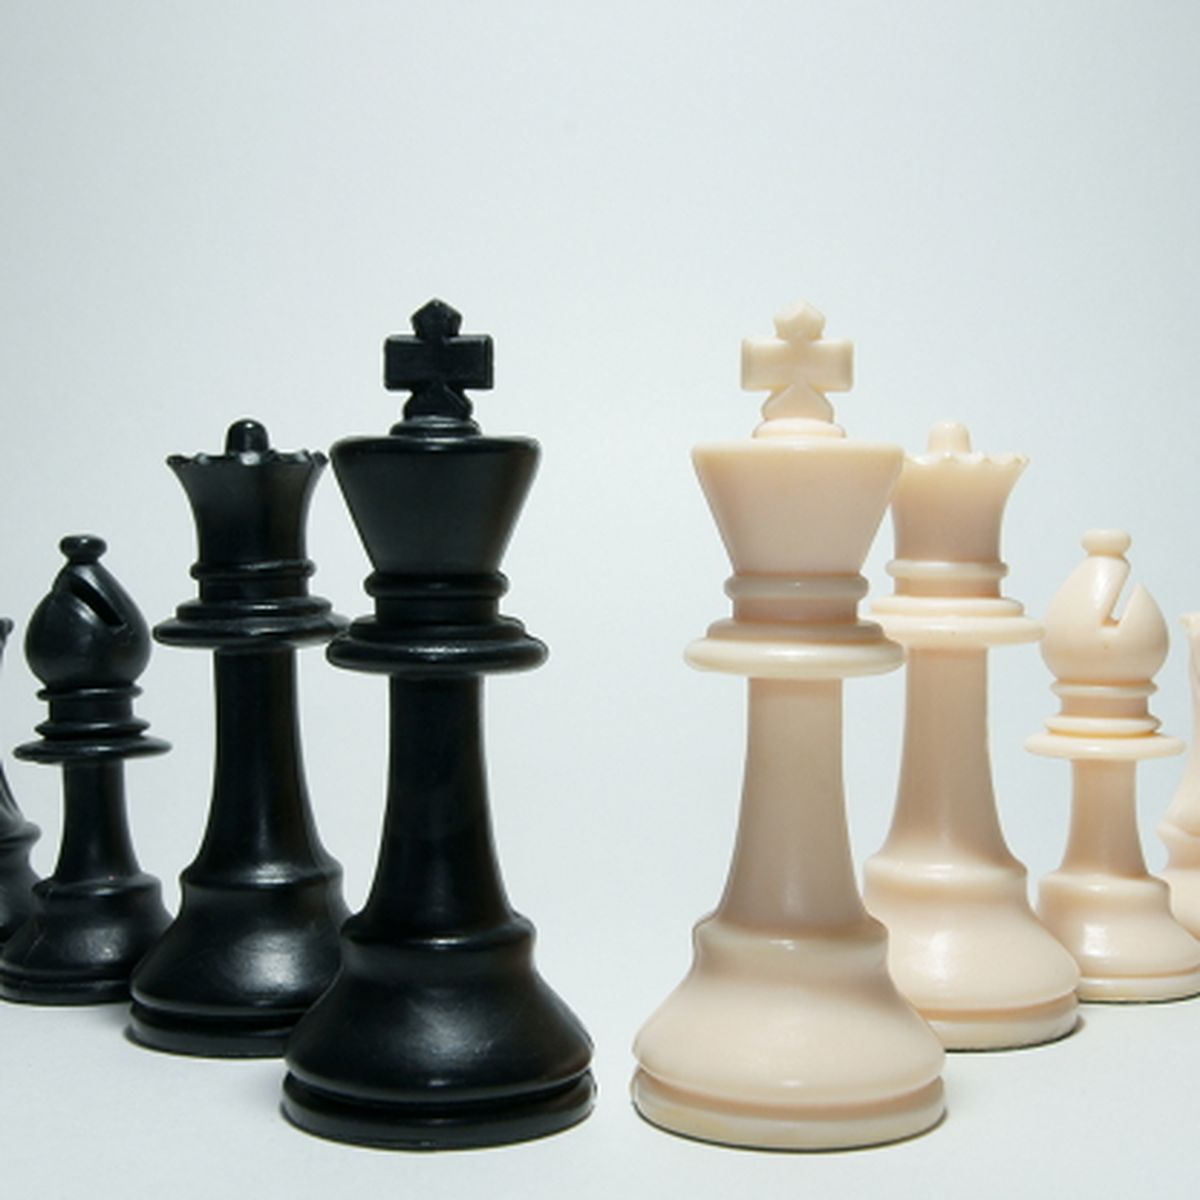 Las mejores páginas web para jugar al ajedrez online